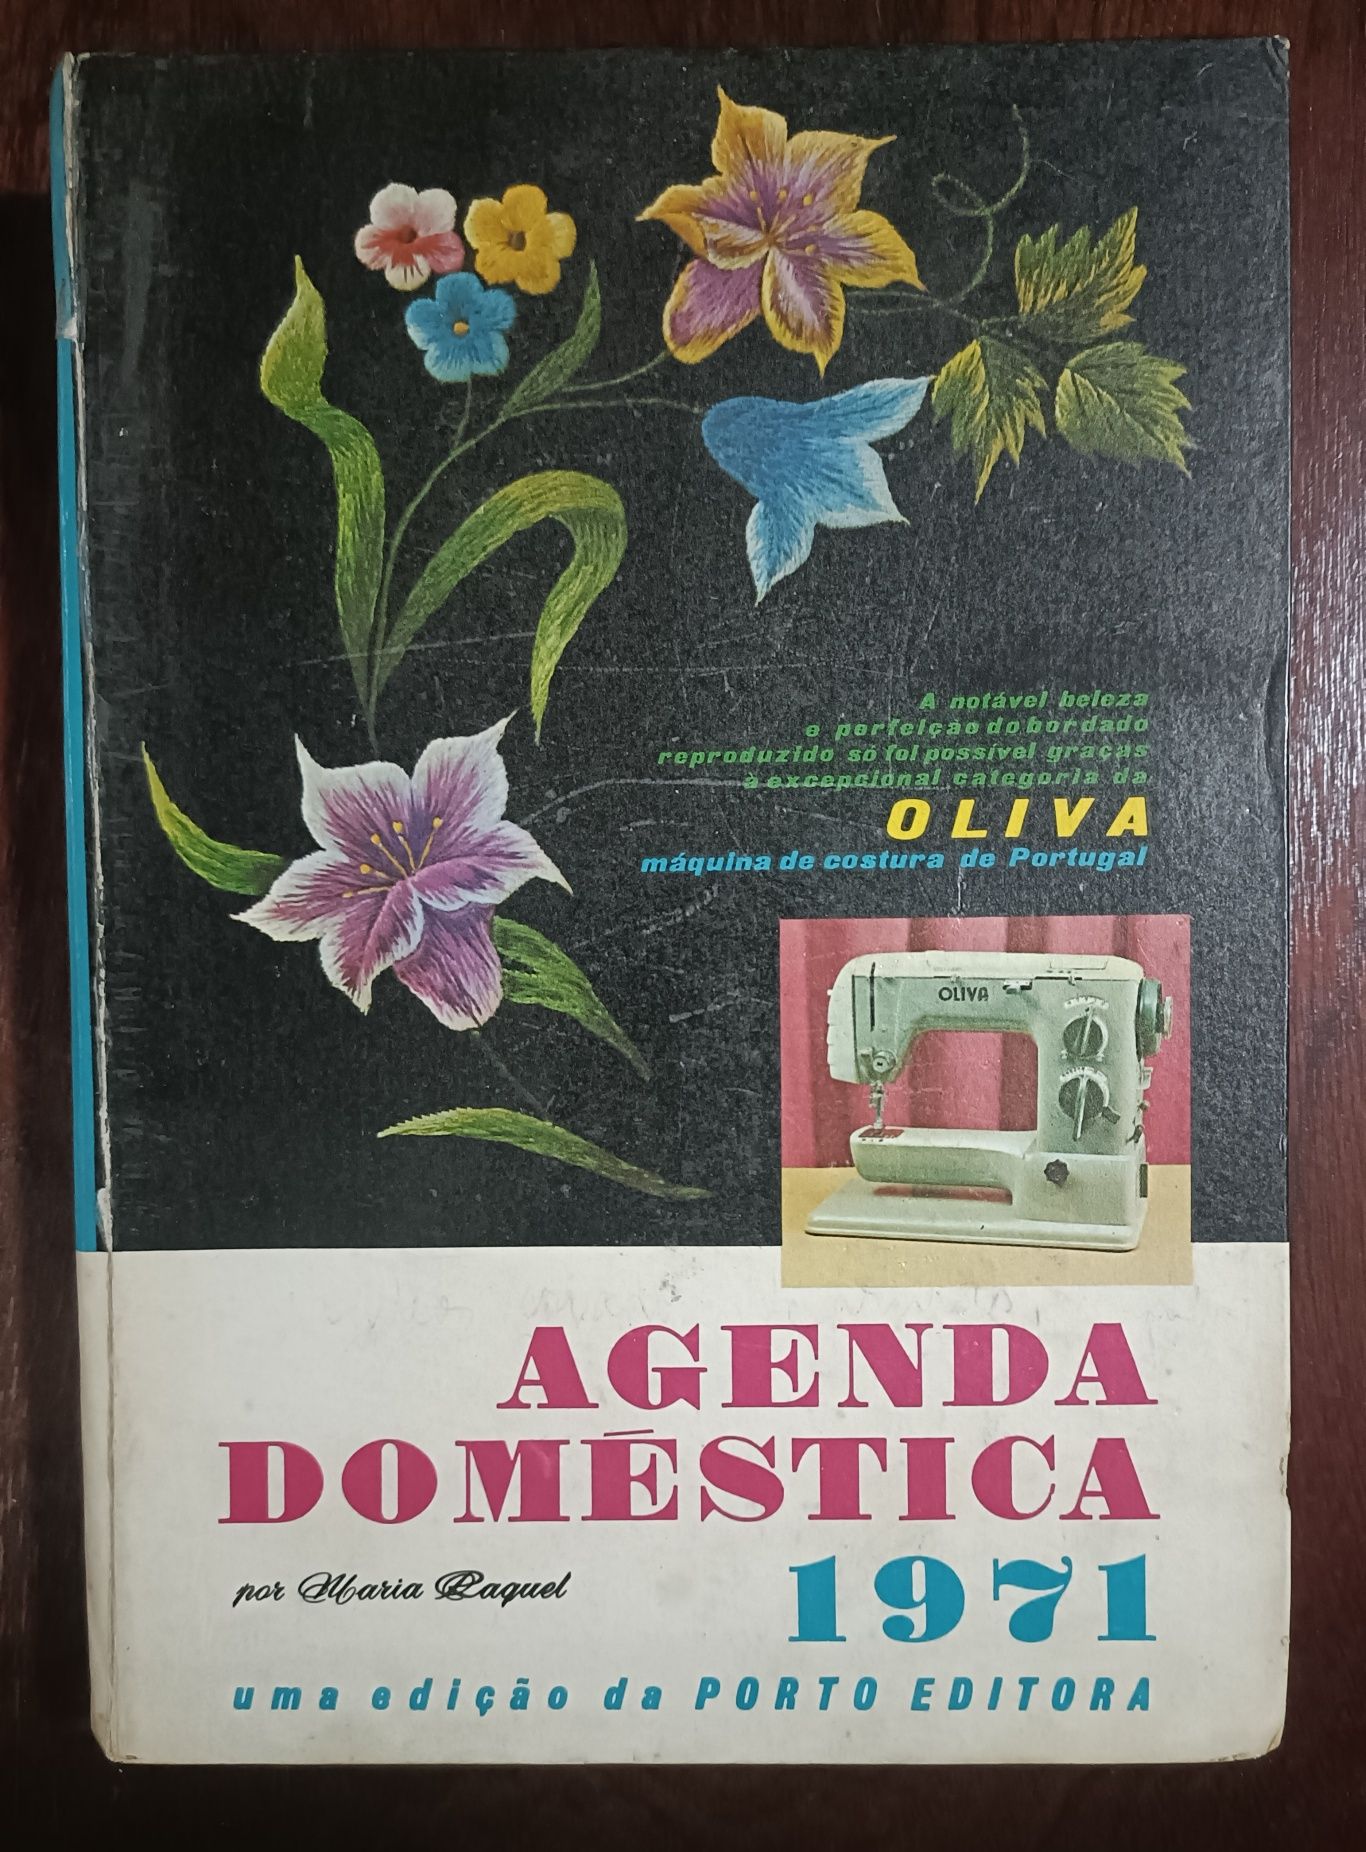 Agenda Doméstica